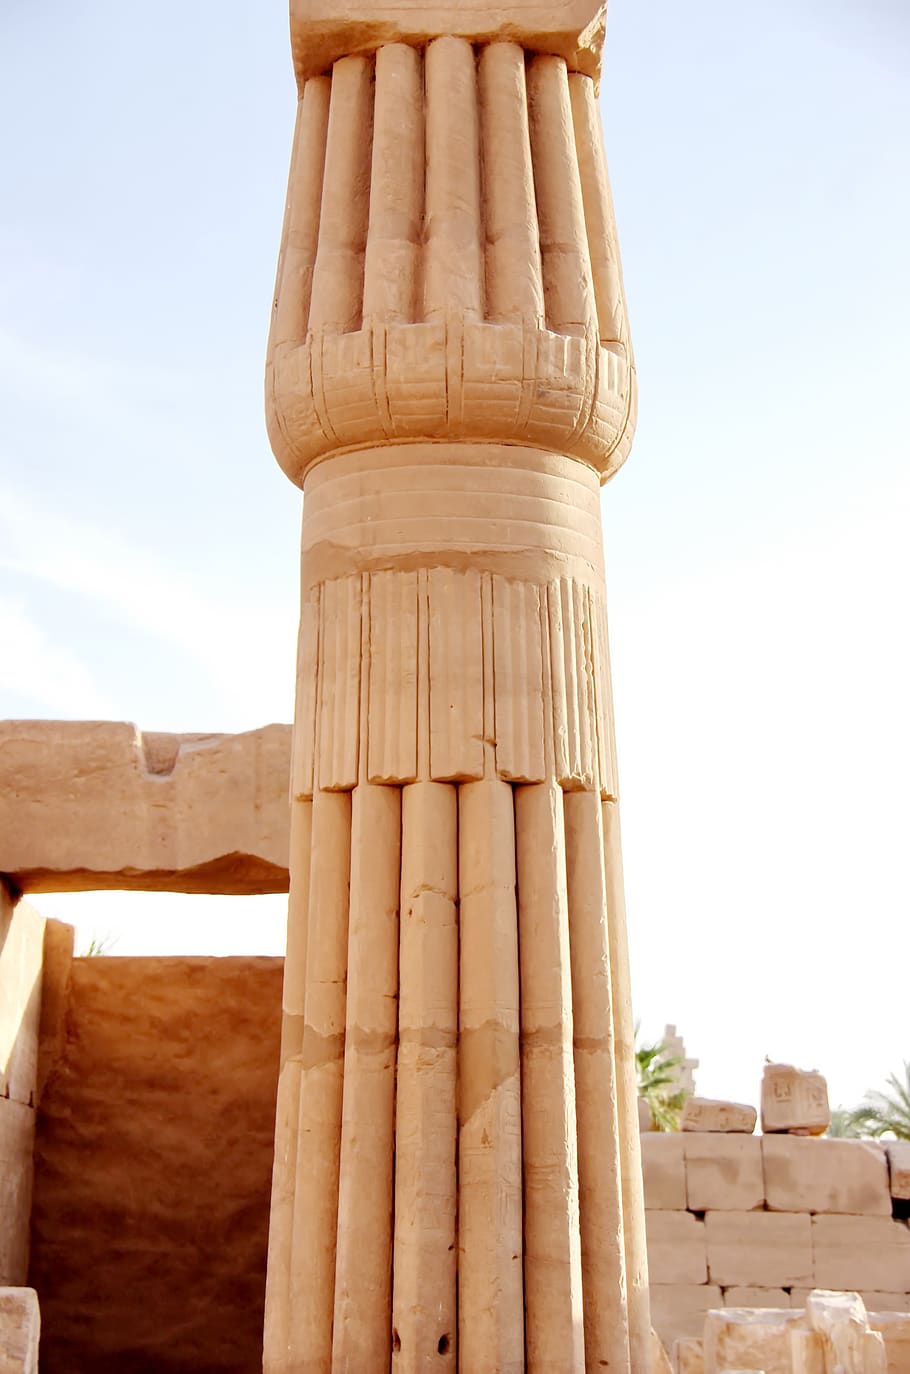 egito, karnak, coluna, gravura, coluna papyriforme, arquitetura, antiguidade, pierre, escultura, viagens